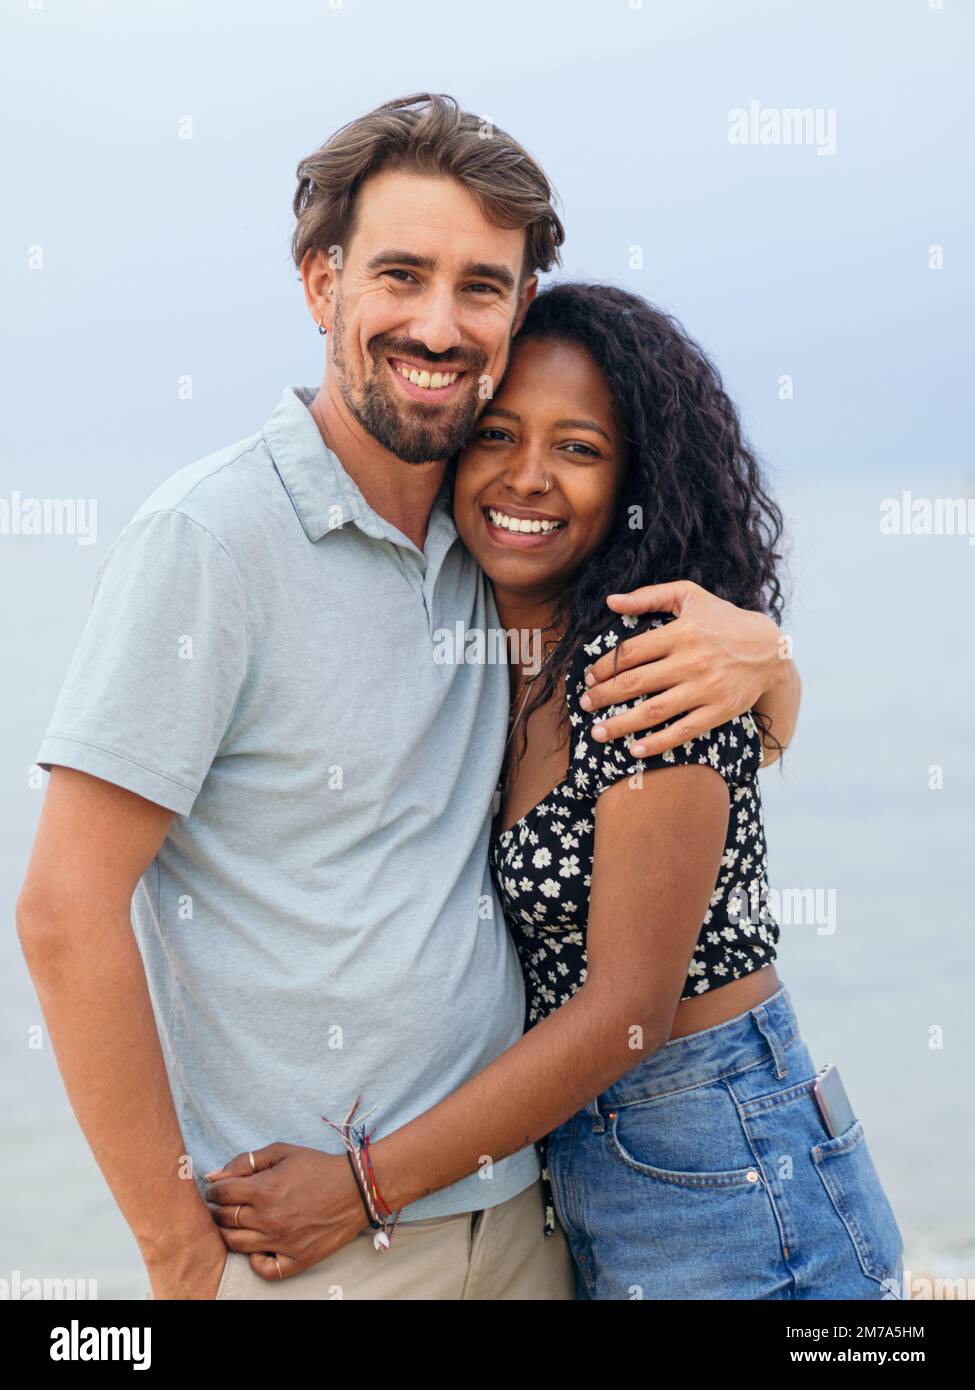 Jeune couple hétérosexuel souriant et enveloppant regardant la caméra. Concept de lune de miel, jour de la Saint-Valentin Banque D'Images